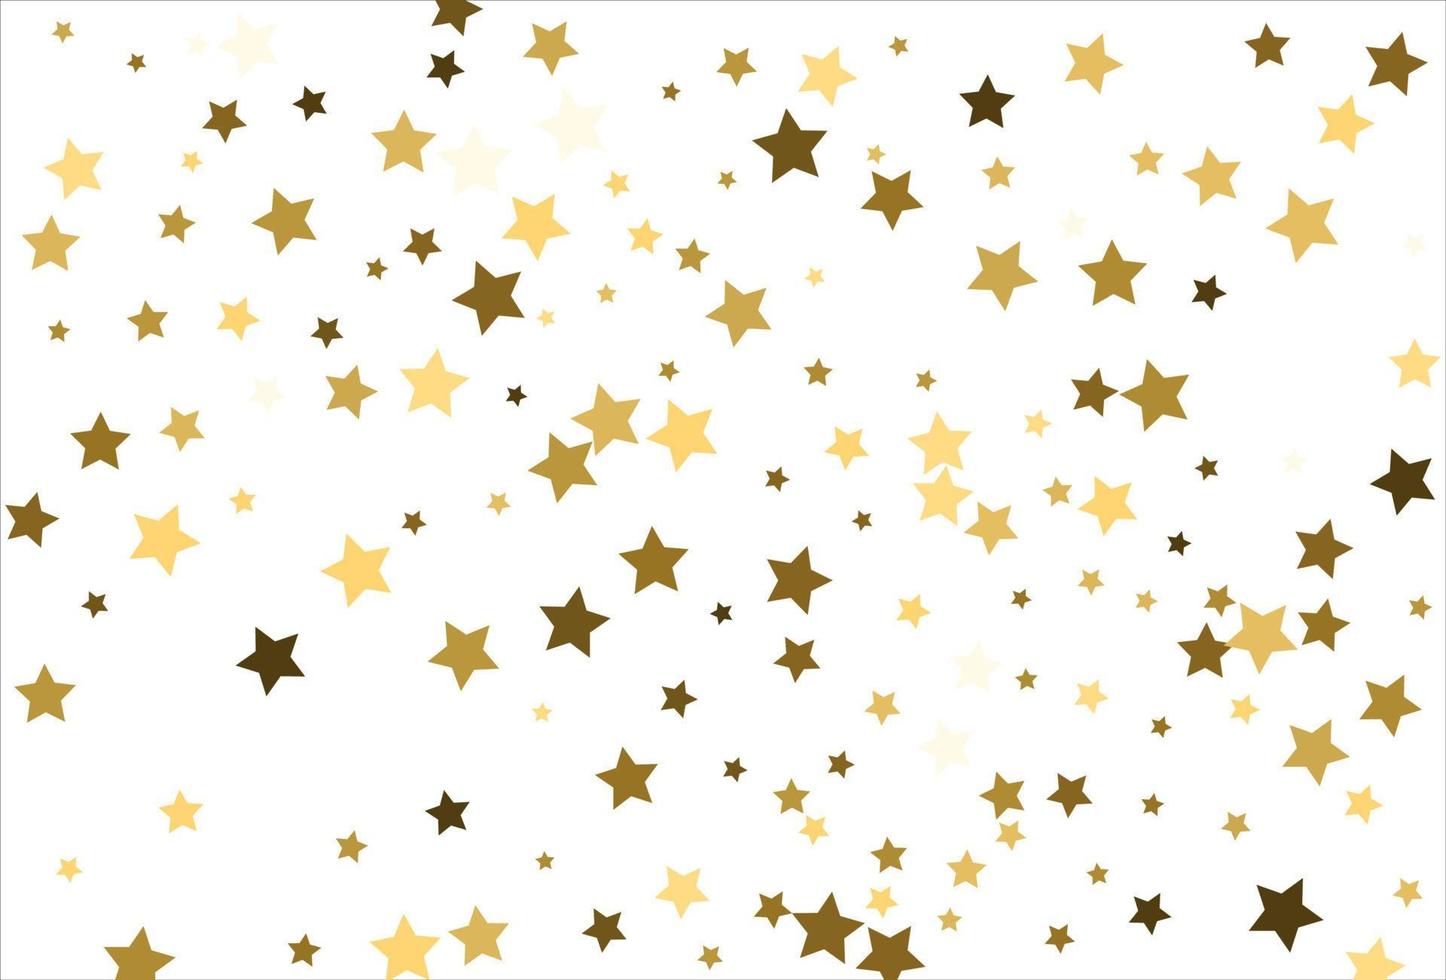 slumpmässig faller guld stjärnor på vit bakgrund. glitter mönster för baner, hälsning kort, jul och ny år kort, inbjudan, vykort, papper förpackning vektor